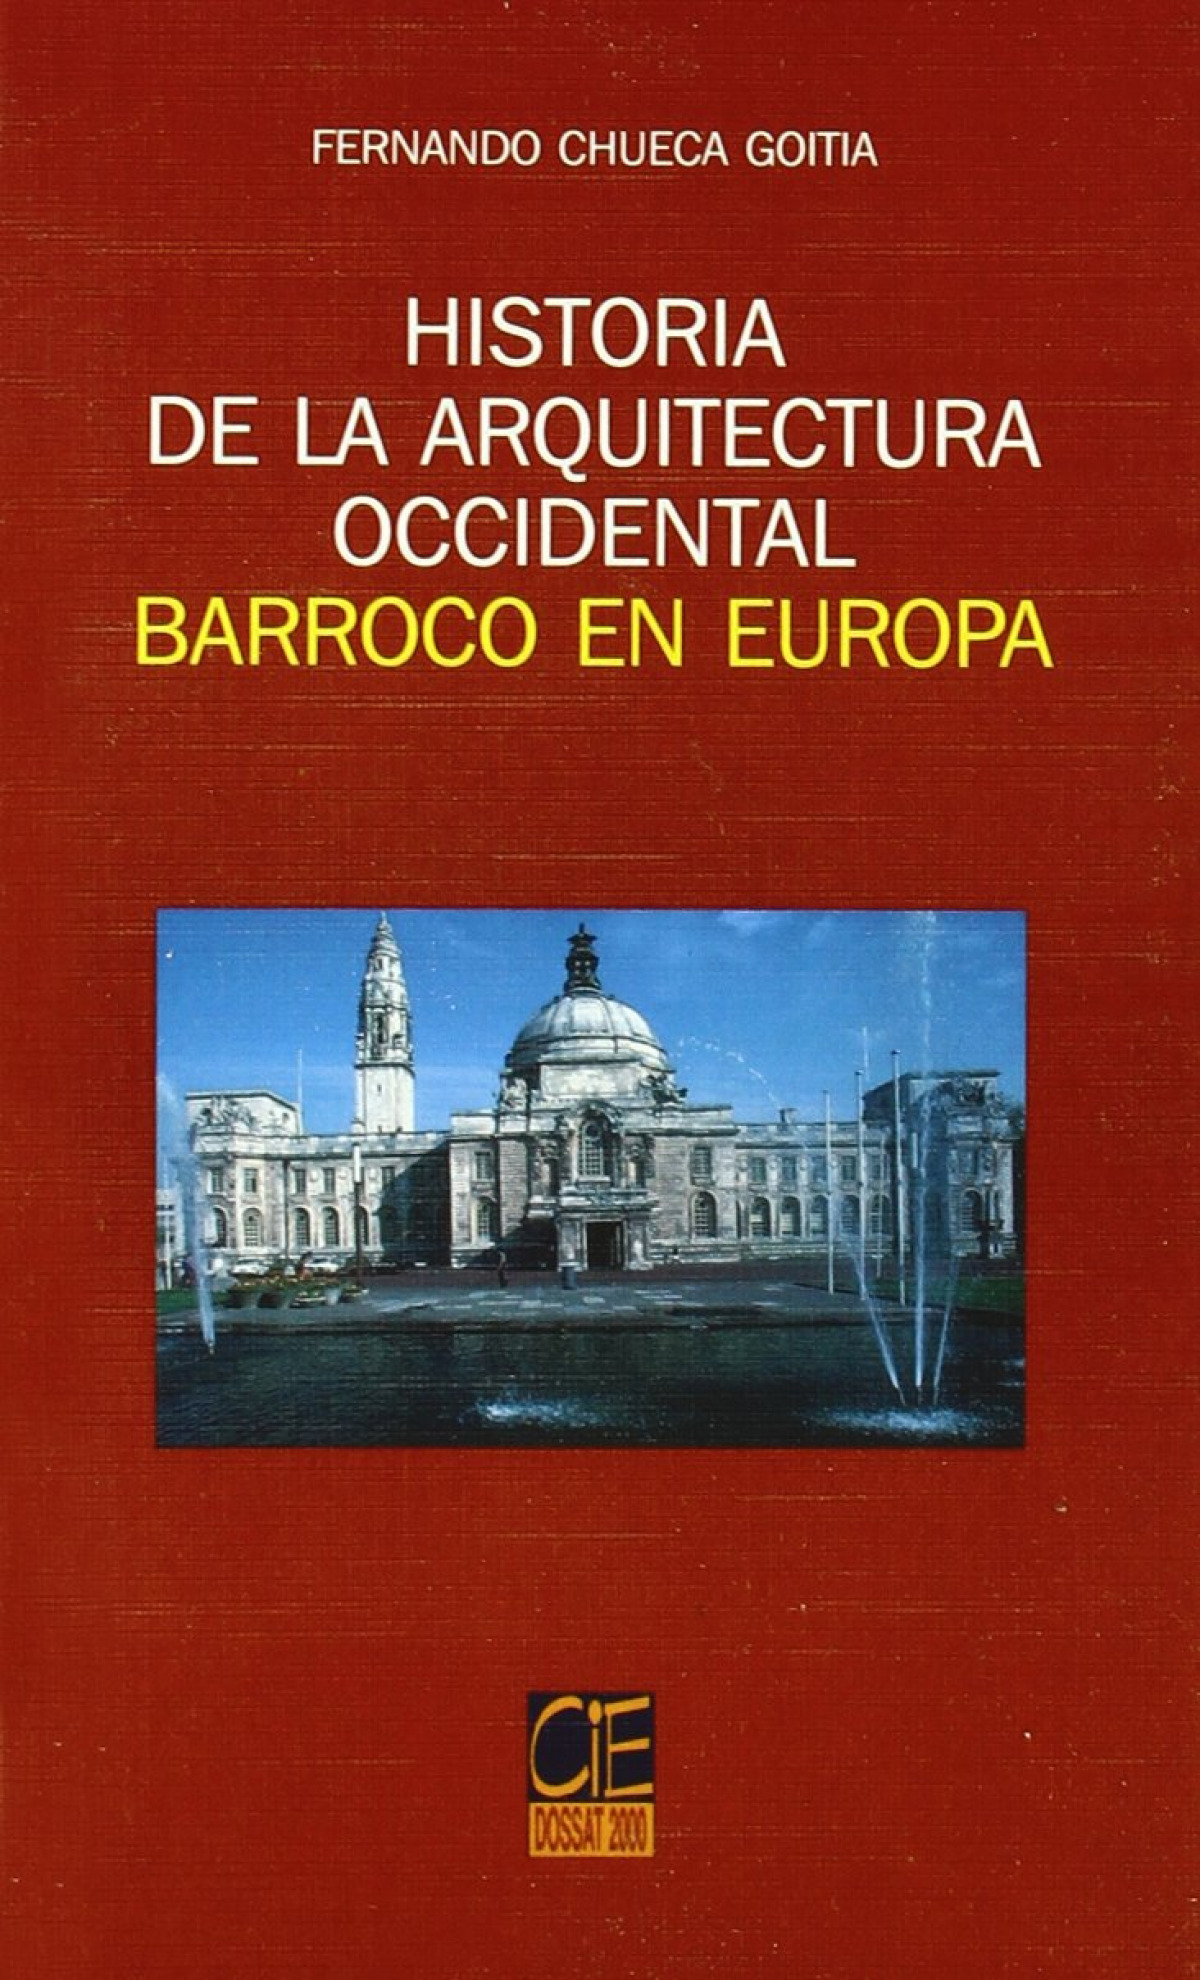 Barroco en Europa - Fernando Chueca Goitia